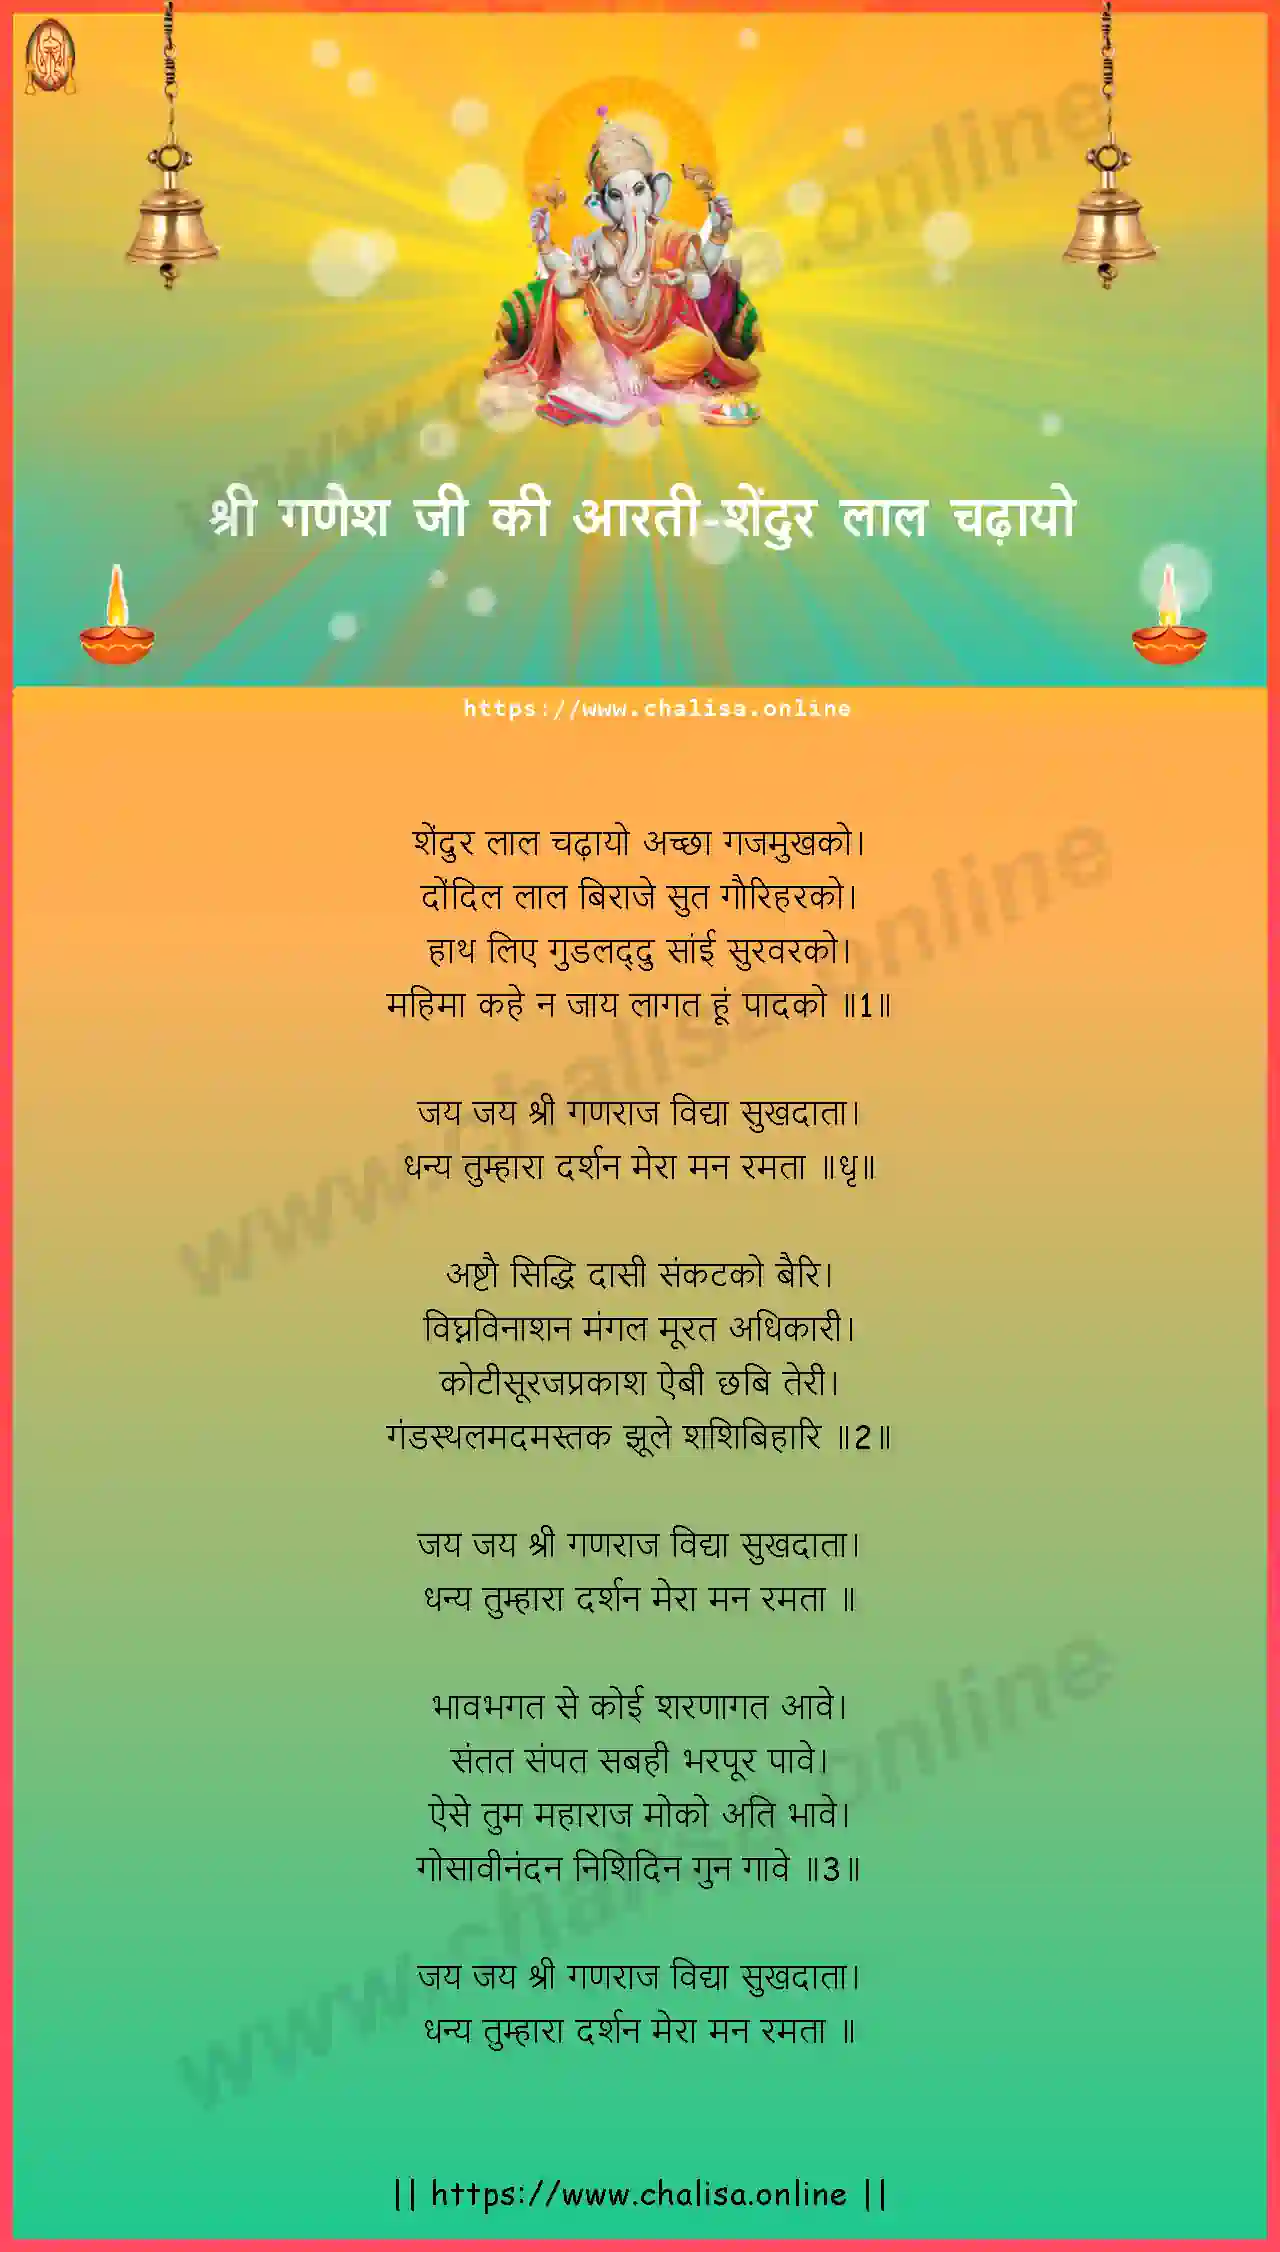 shendur-lal-chadhayo-ganpati-aarti-hindi-lyrics-download